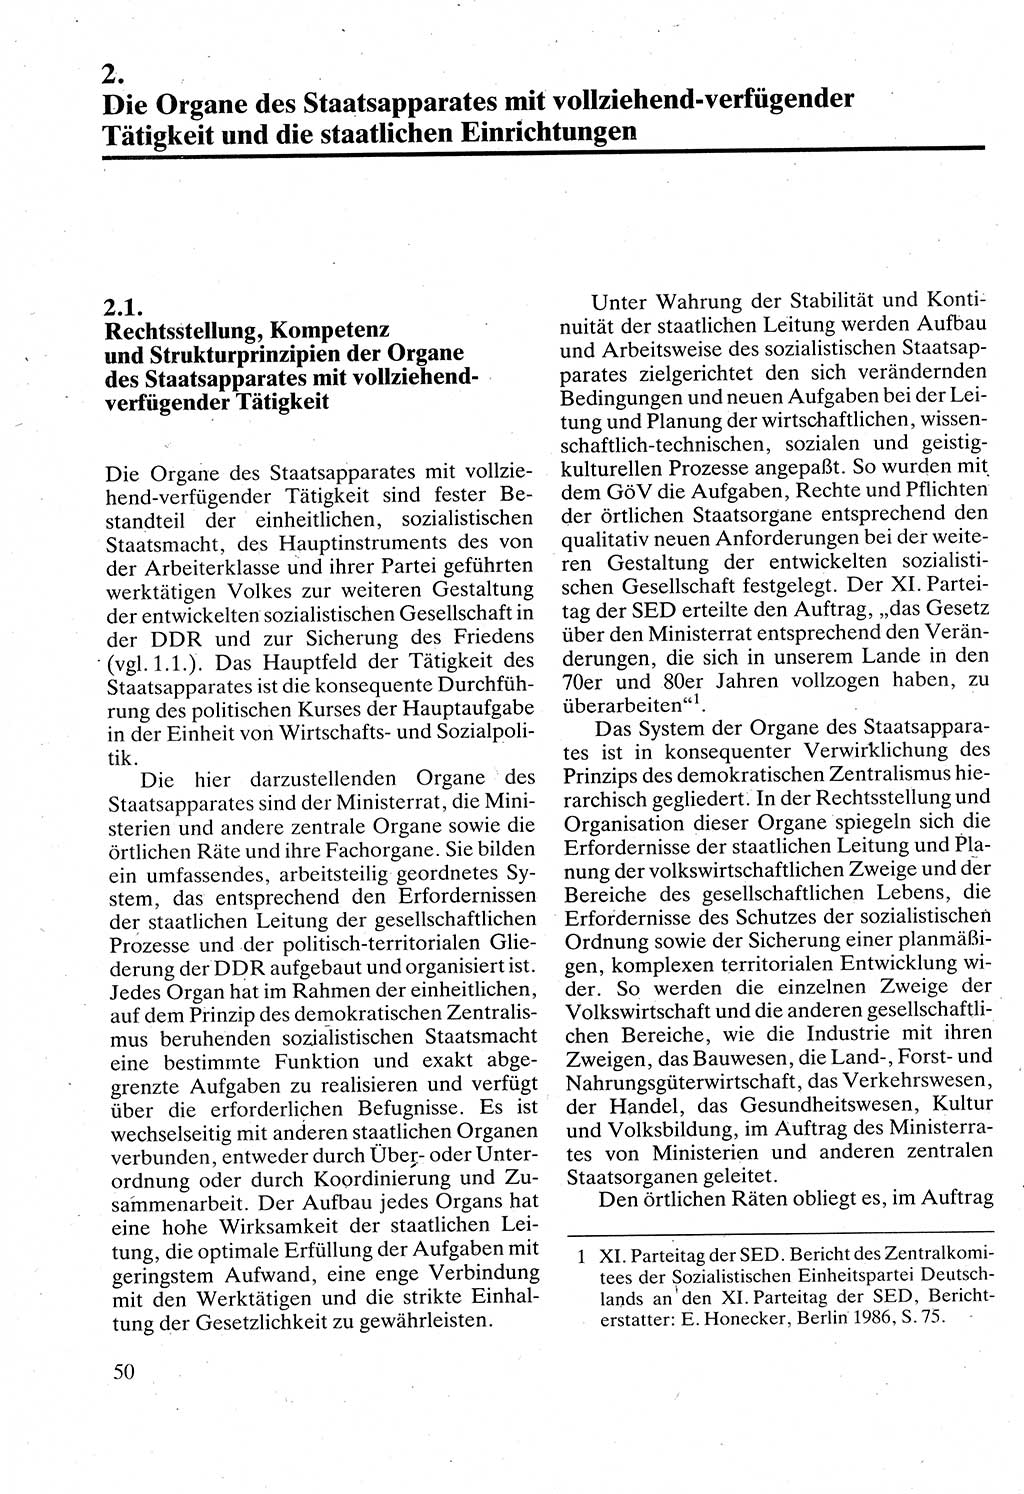 Verwaltungsrecht [Deutsche Demokratische Republik (DDR)], Lehrbuch 1988, Seite 50 (Verw.-R. DDR Lb. 1988, S. 50)